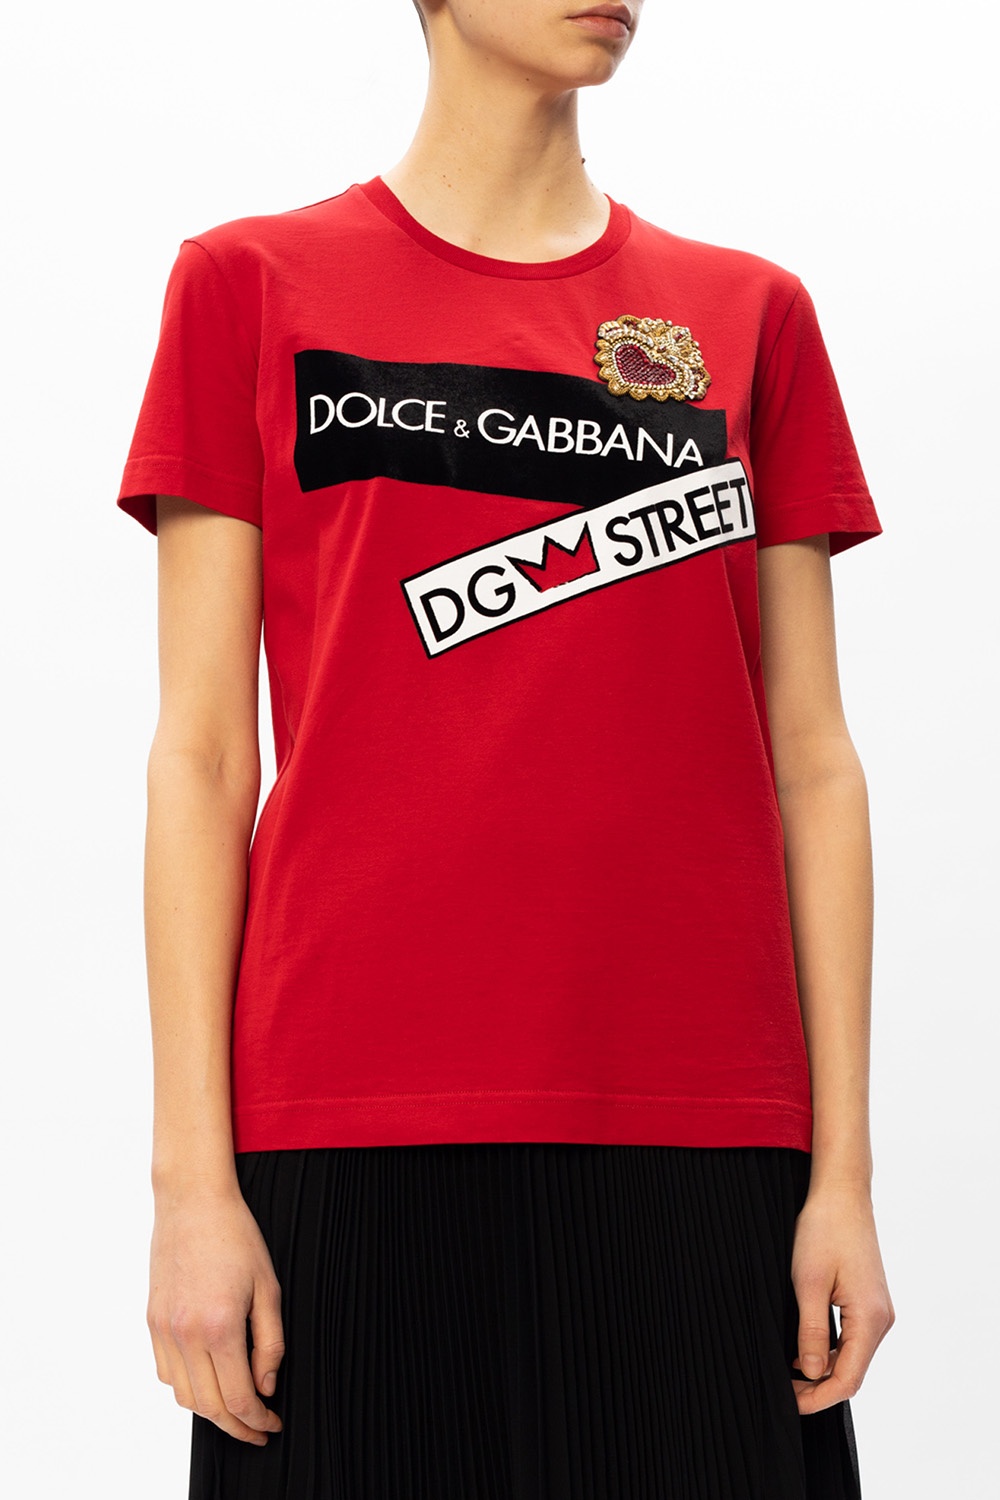 Dolce & Gabbana T-shirt with logo | Women's Clothing | IetpShops